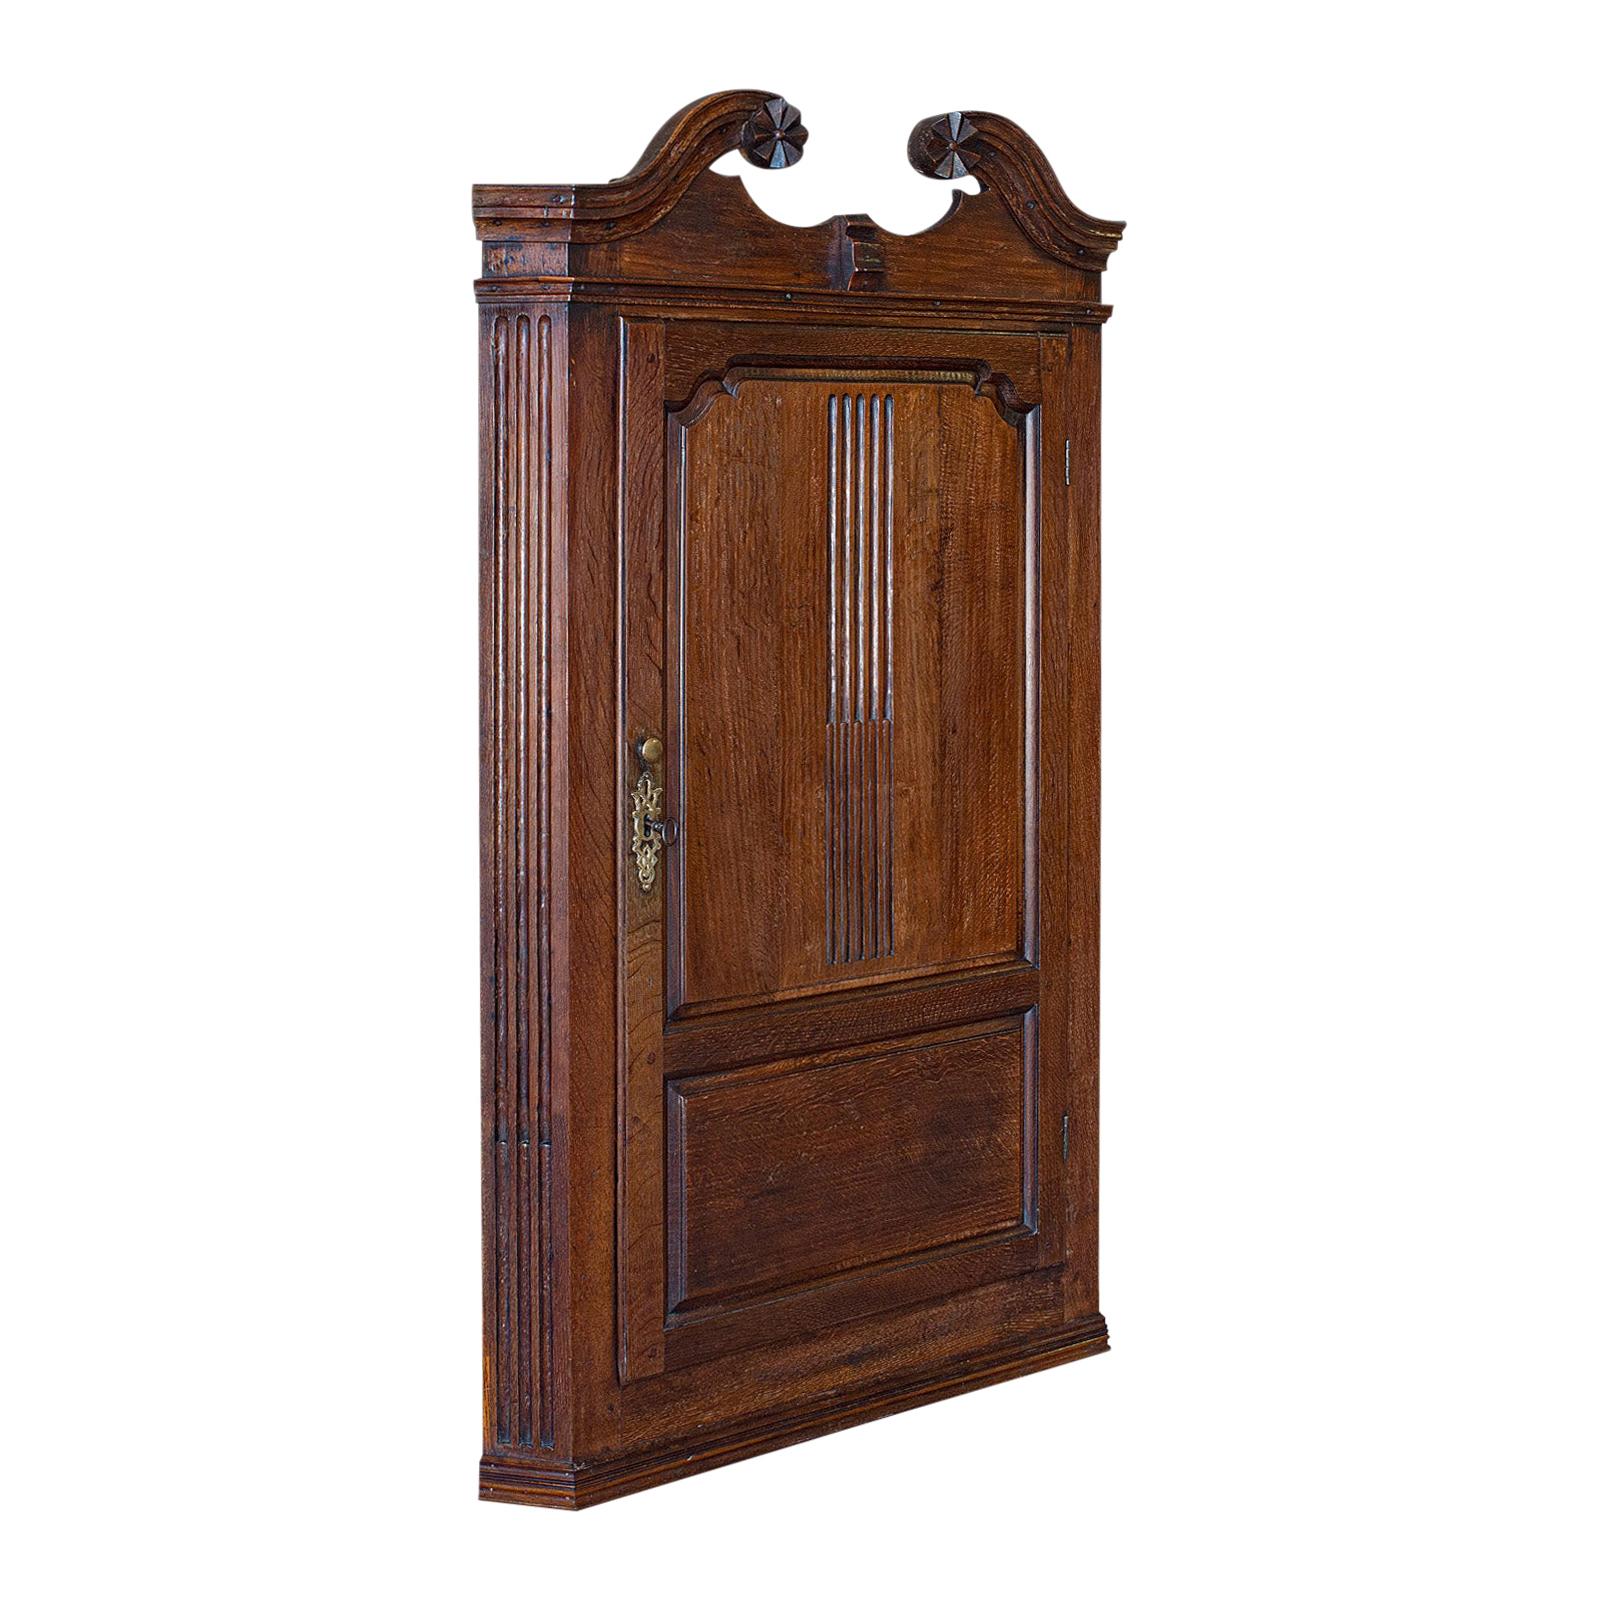 Antique meuble d'angle géorgien:: anglais:: chêne:: armoire suspendue:: circa 1780